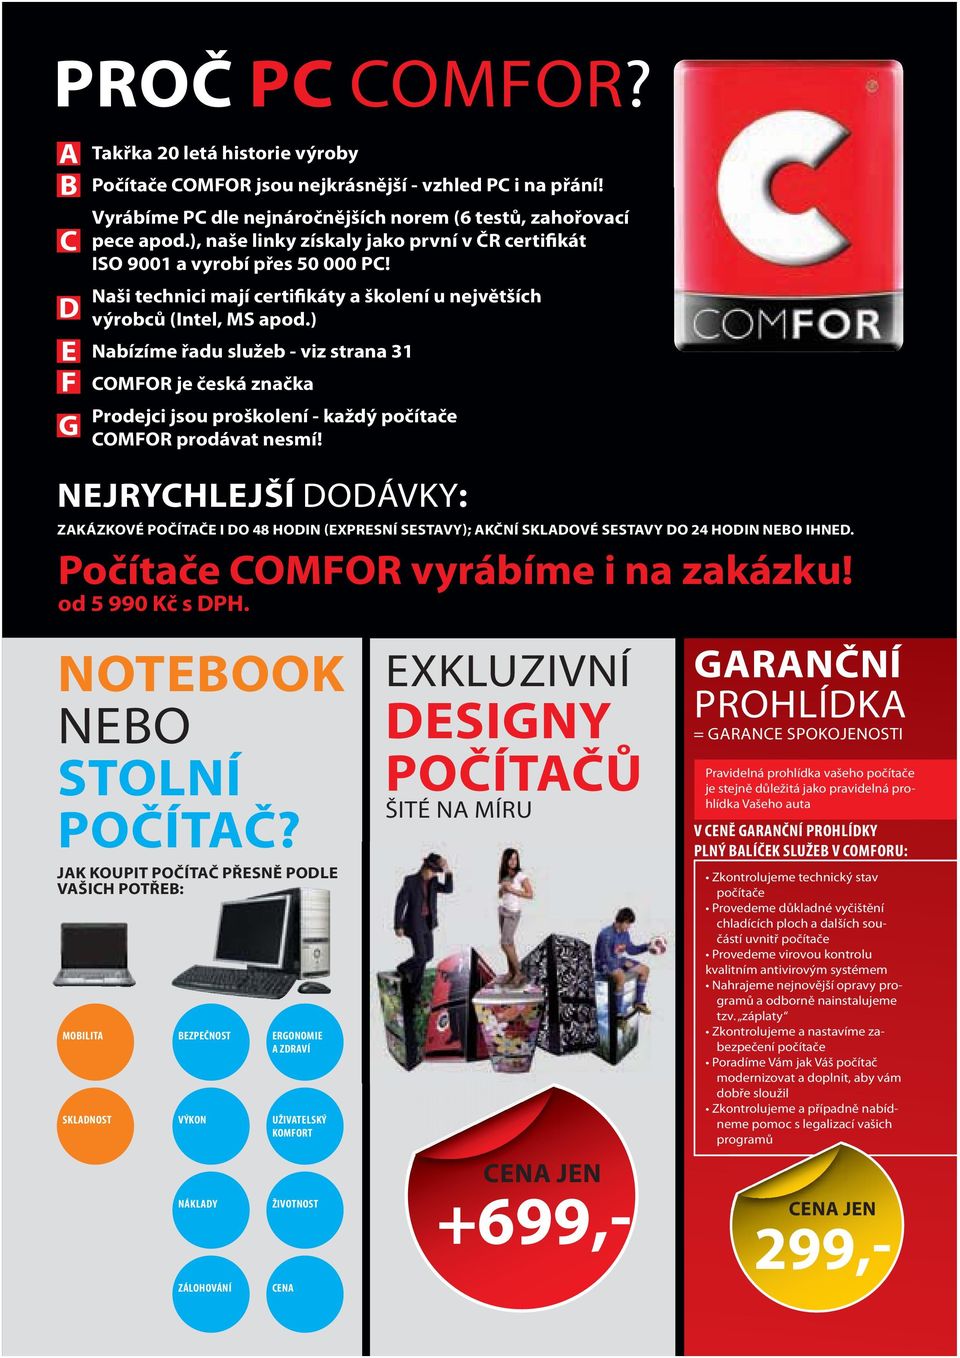 ) Nabízíme řadu služeb - viz strana 31 COMFOR je česká značka Prodejci jsou proškolení - každý počítače COMFOR prodávat nesmí!